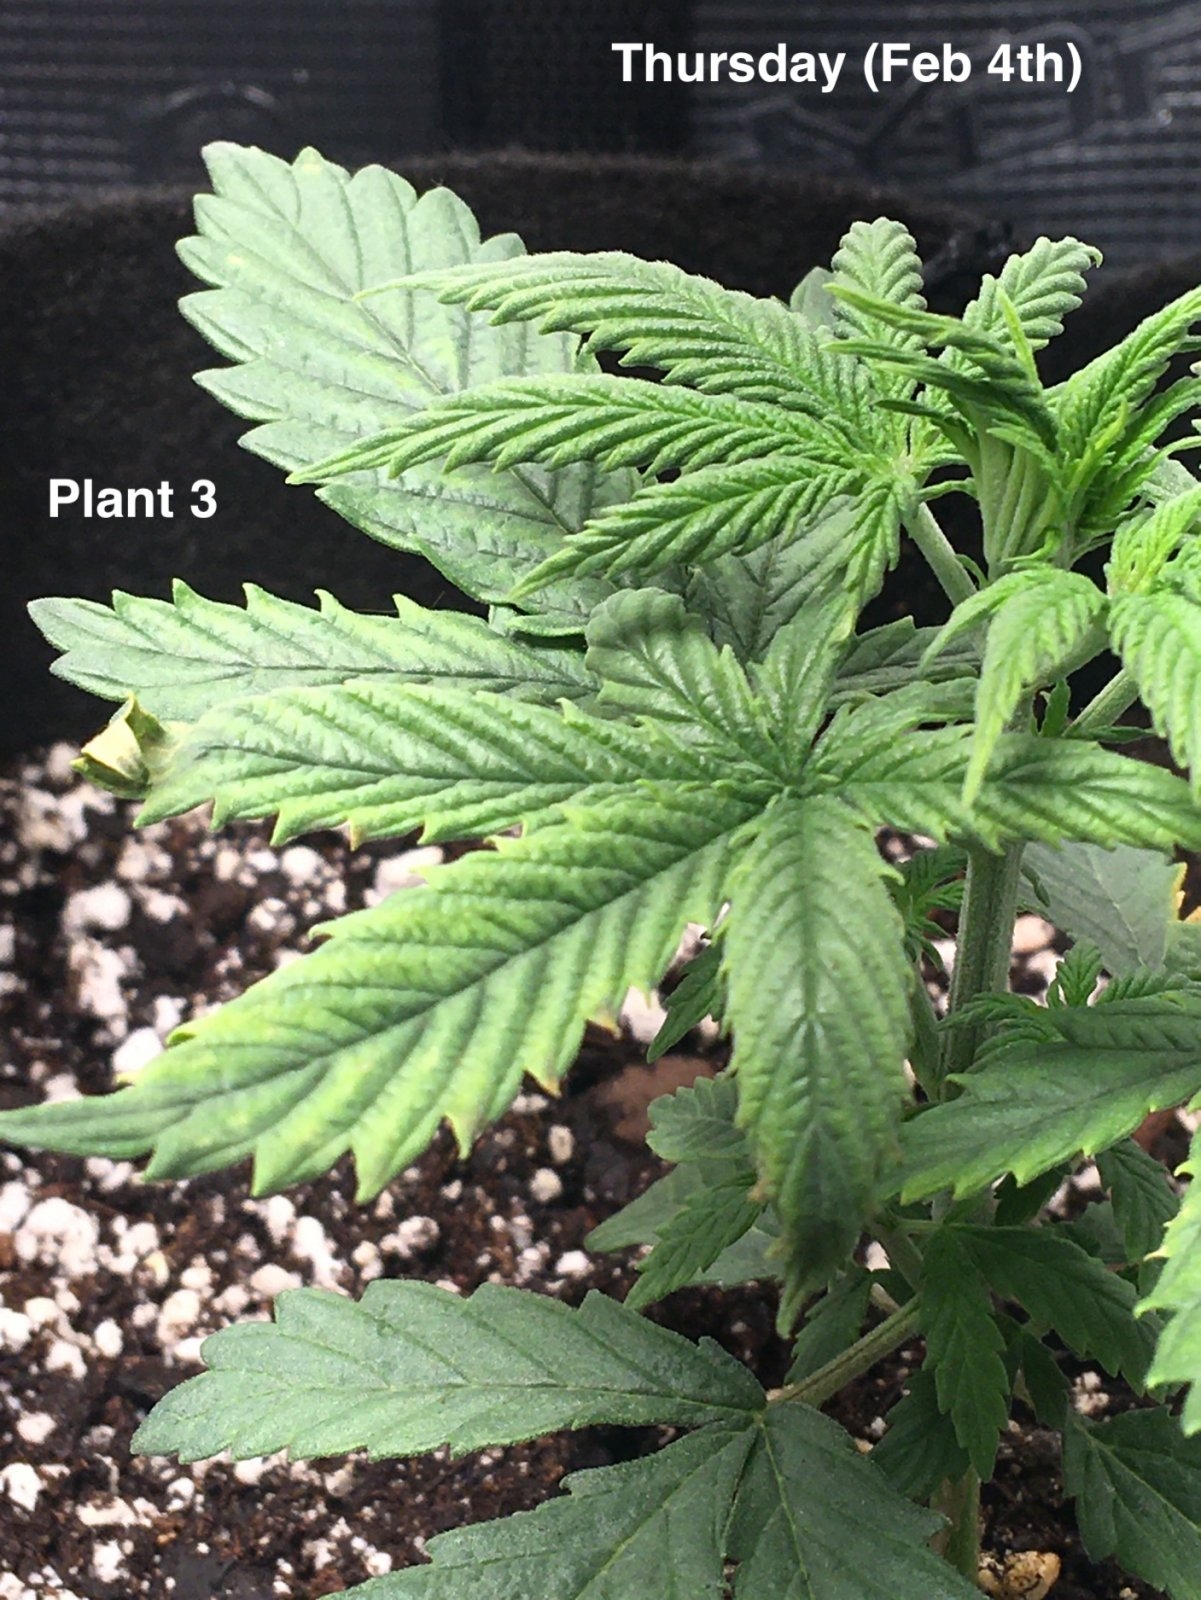 Plant #3 (Feb4th).jpg